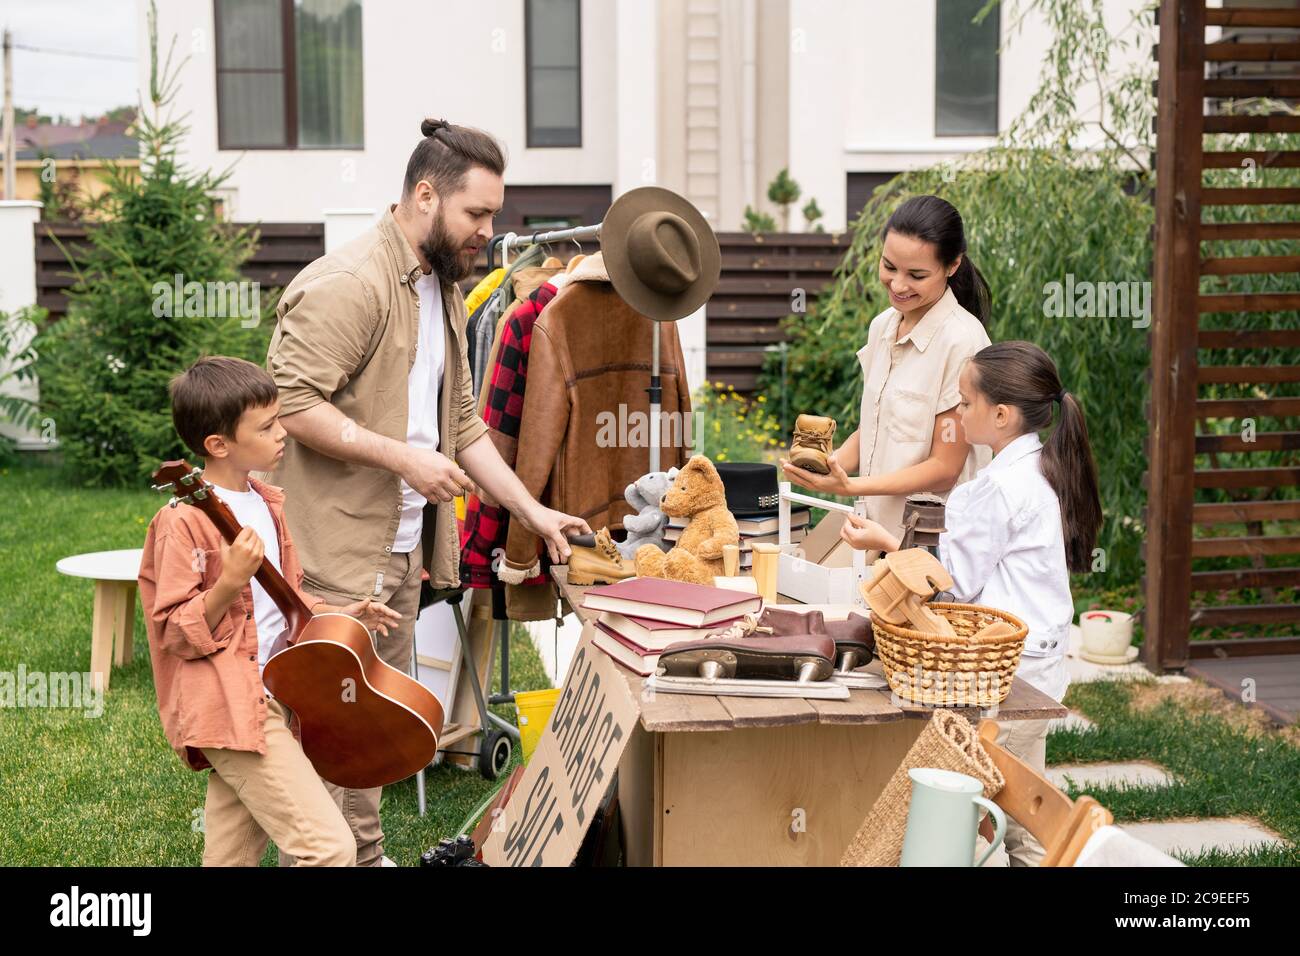 Freundliche junge Familie, die am Tisch im Hinterhof steht und Sachen für den Garagenverkauf verpackt Stockfoto